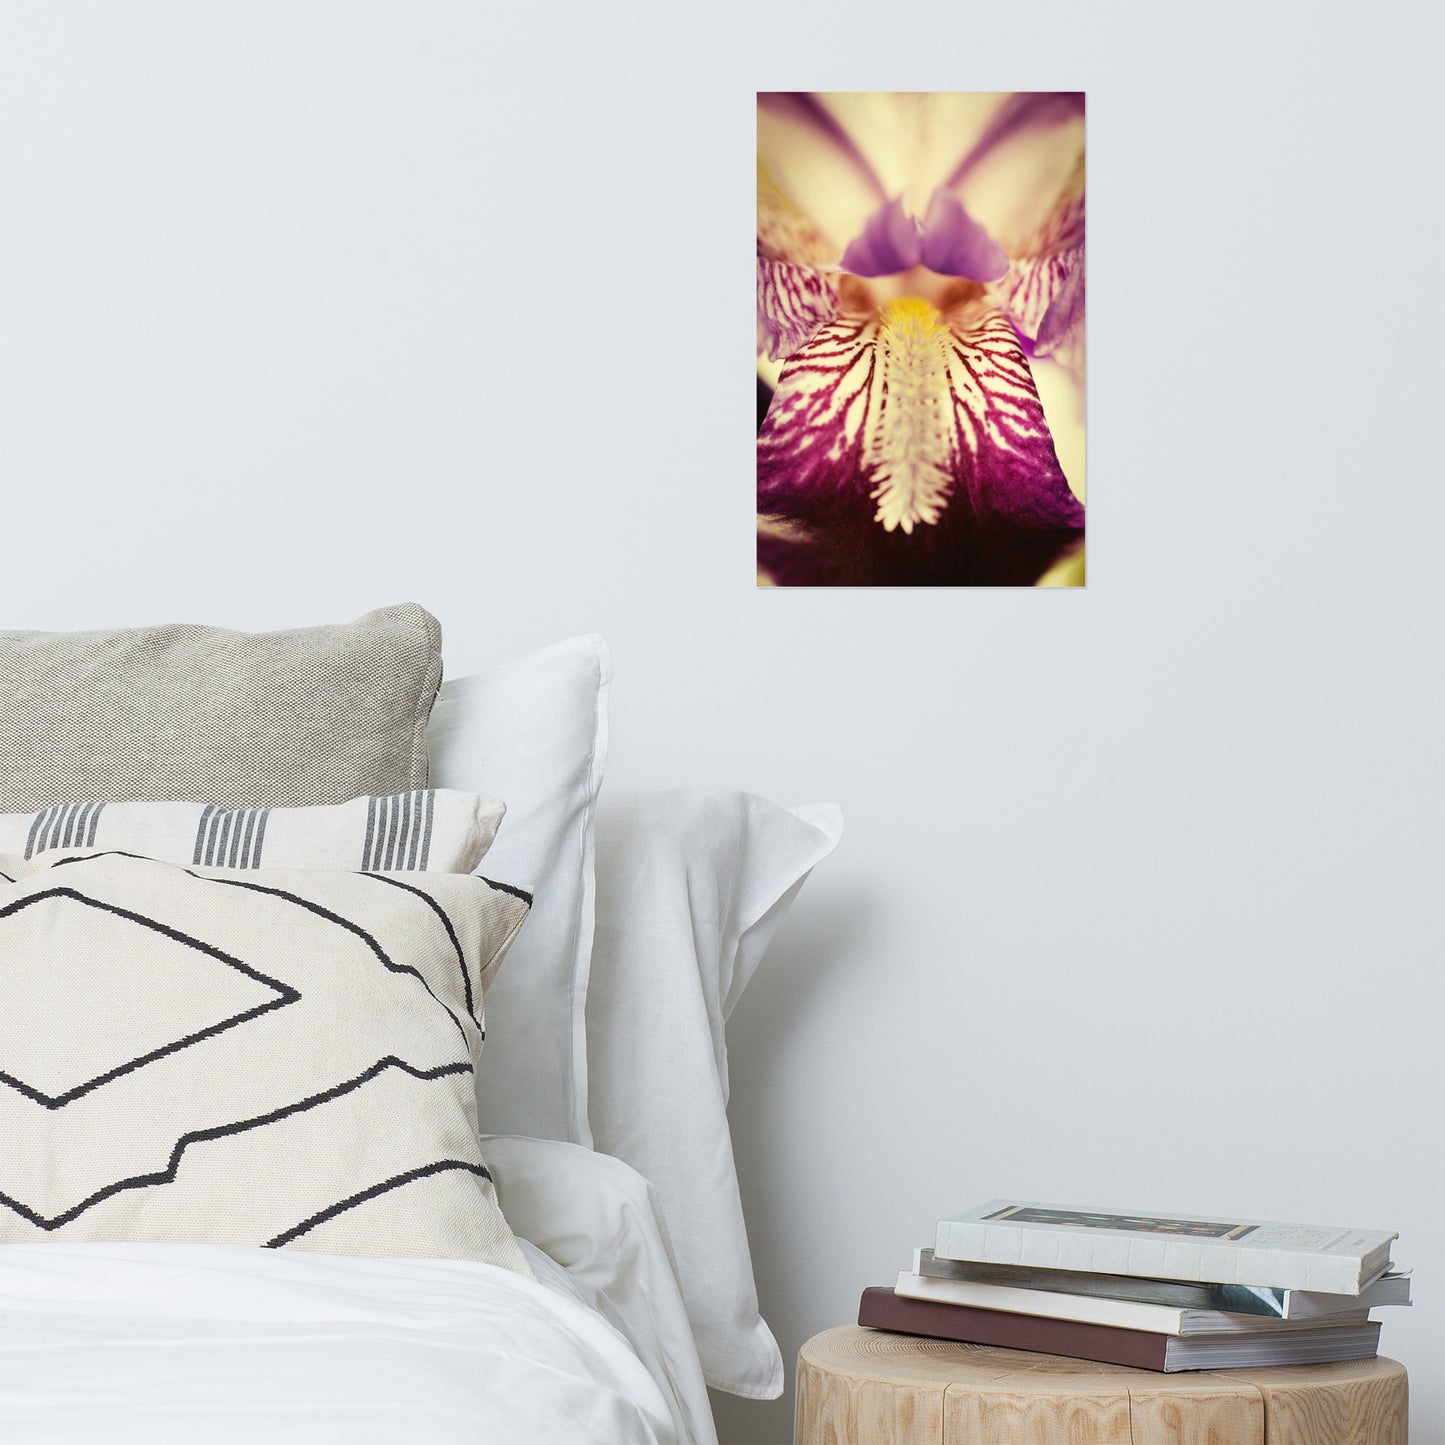 Floral Photography Wall Art: Antiqued Iris - Botanical / Floral / Flora / Flowers / Nature Photograph Loose / Unframed / Frameless / Frameable Wall Art Print - Artwork